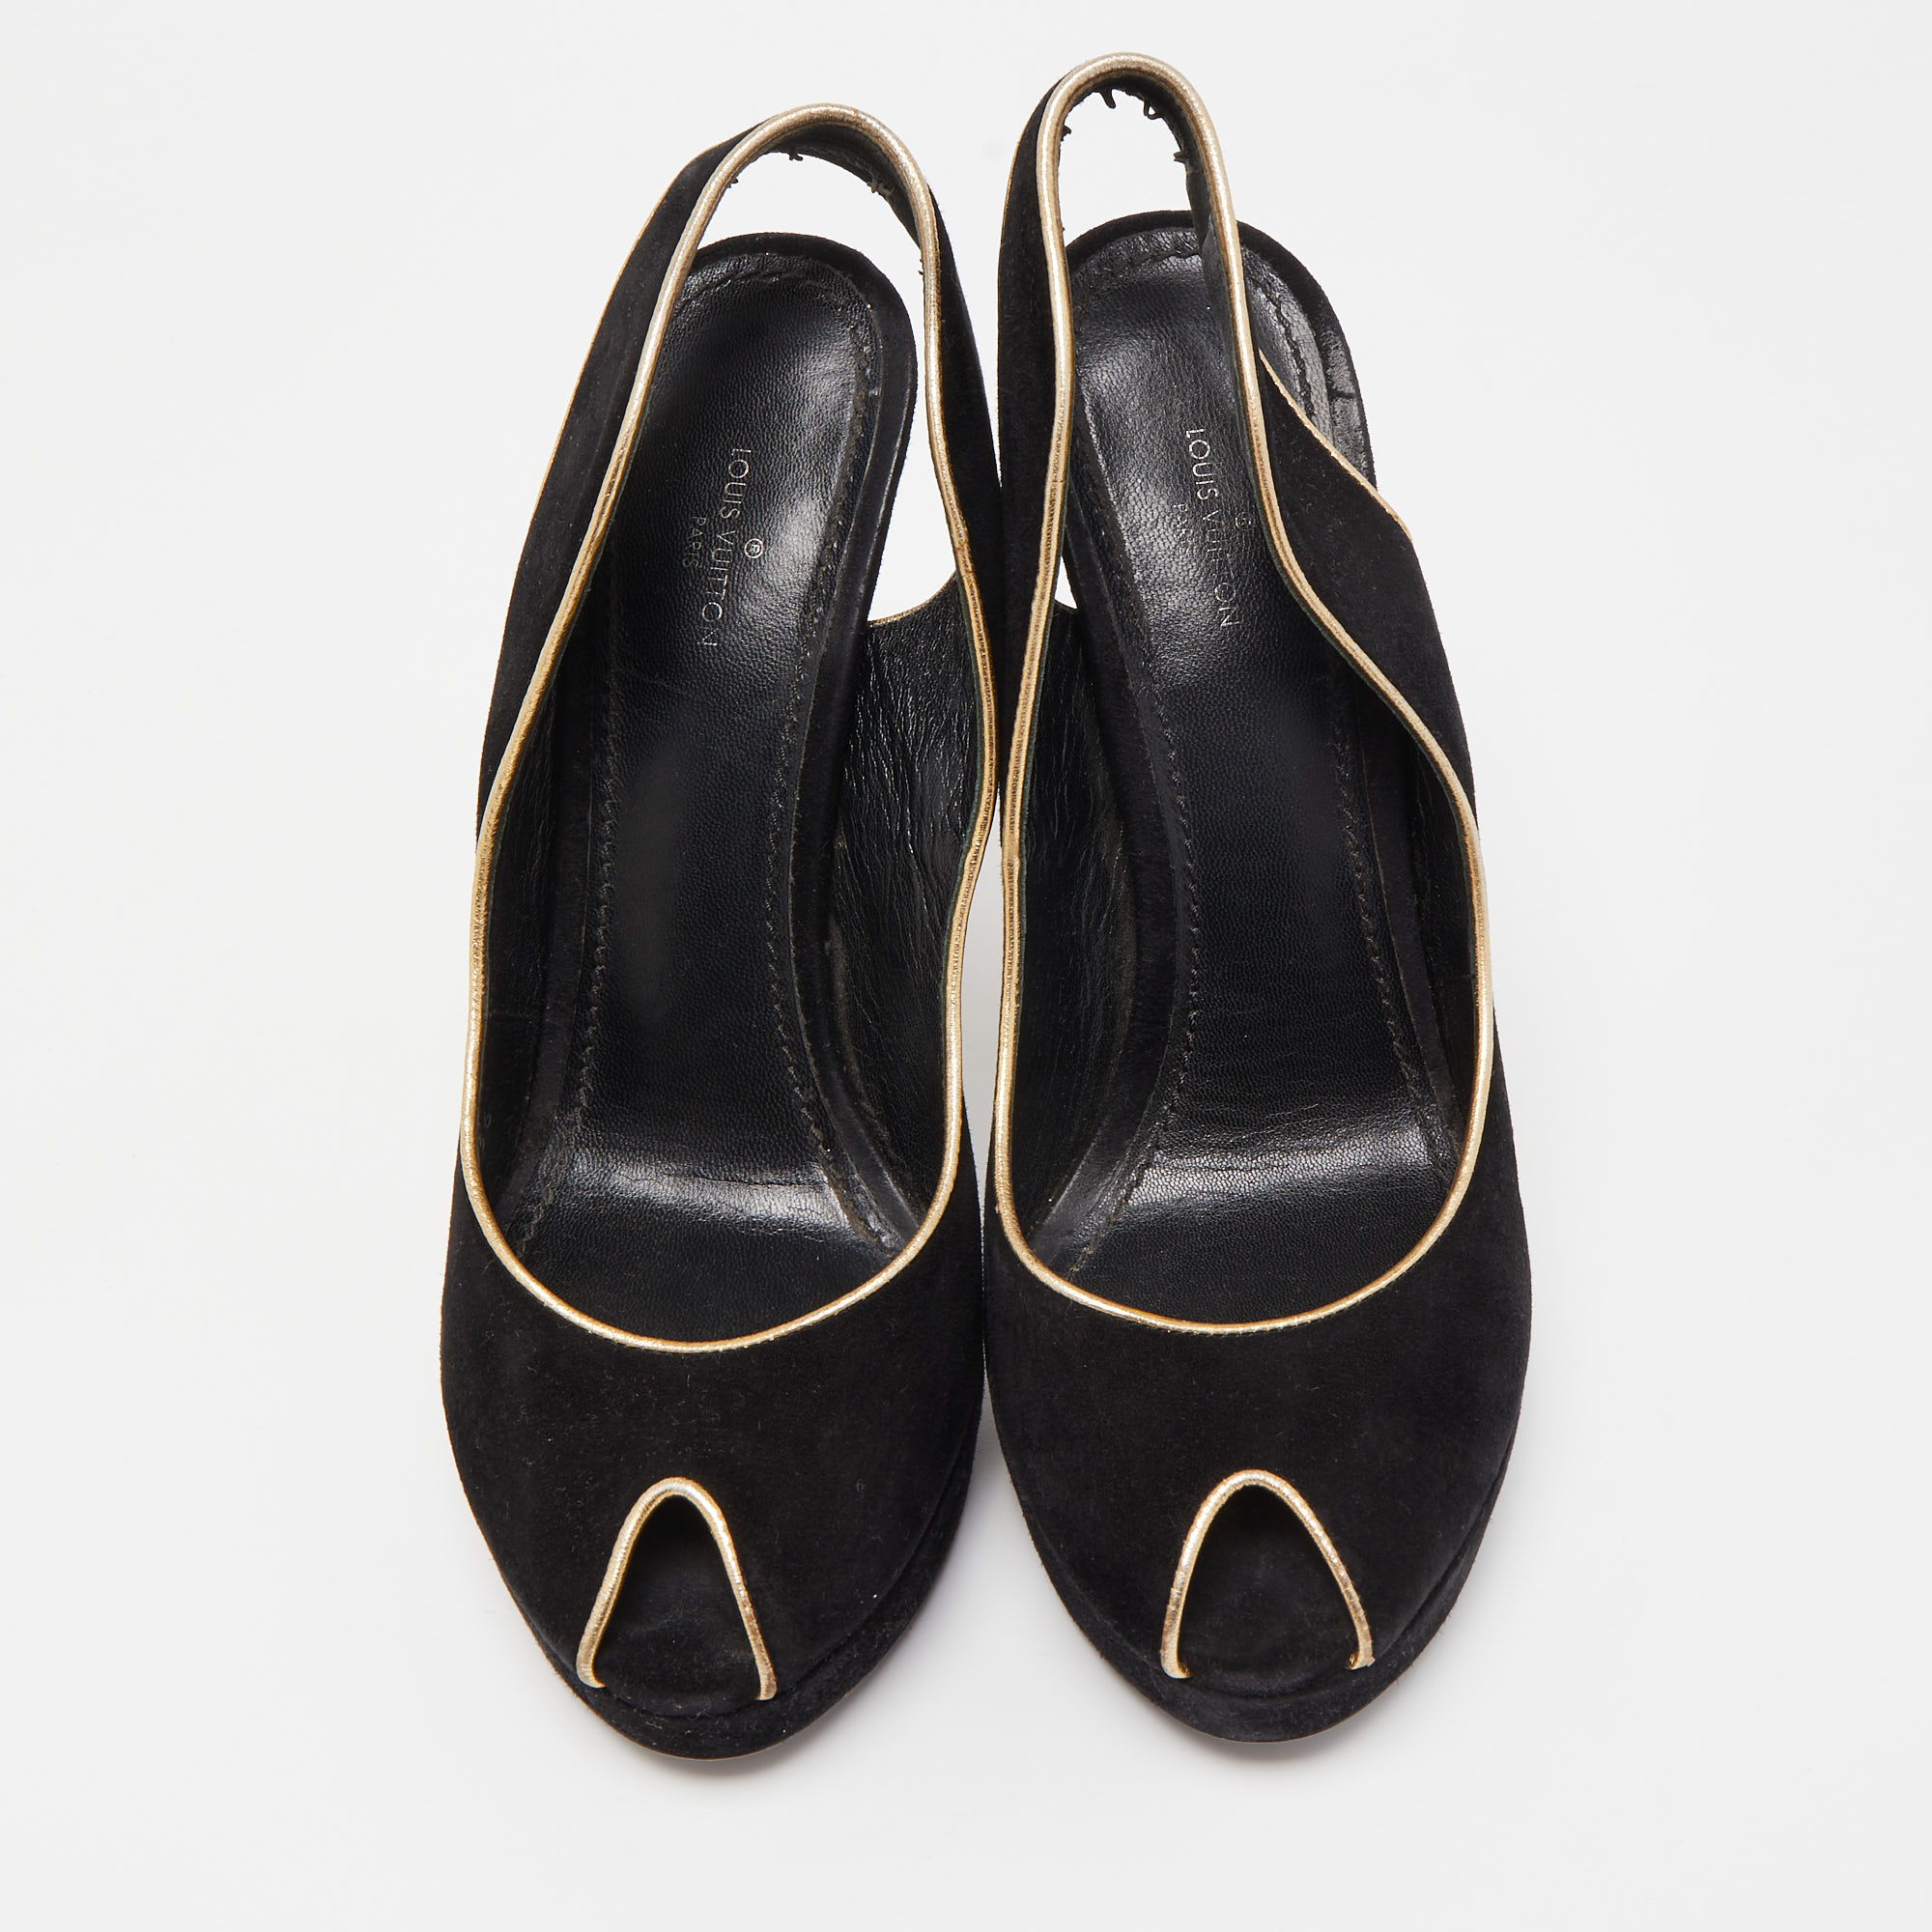 Louis Vuitton Black Suede Slingback Peep Toe  Pumps Size 37.5